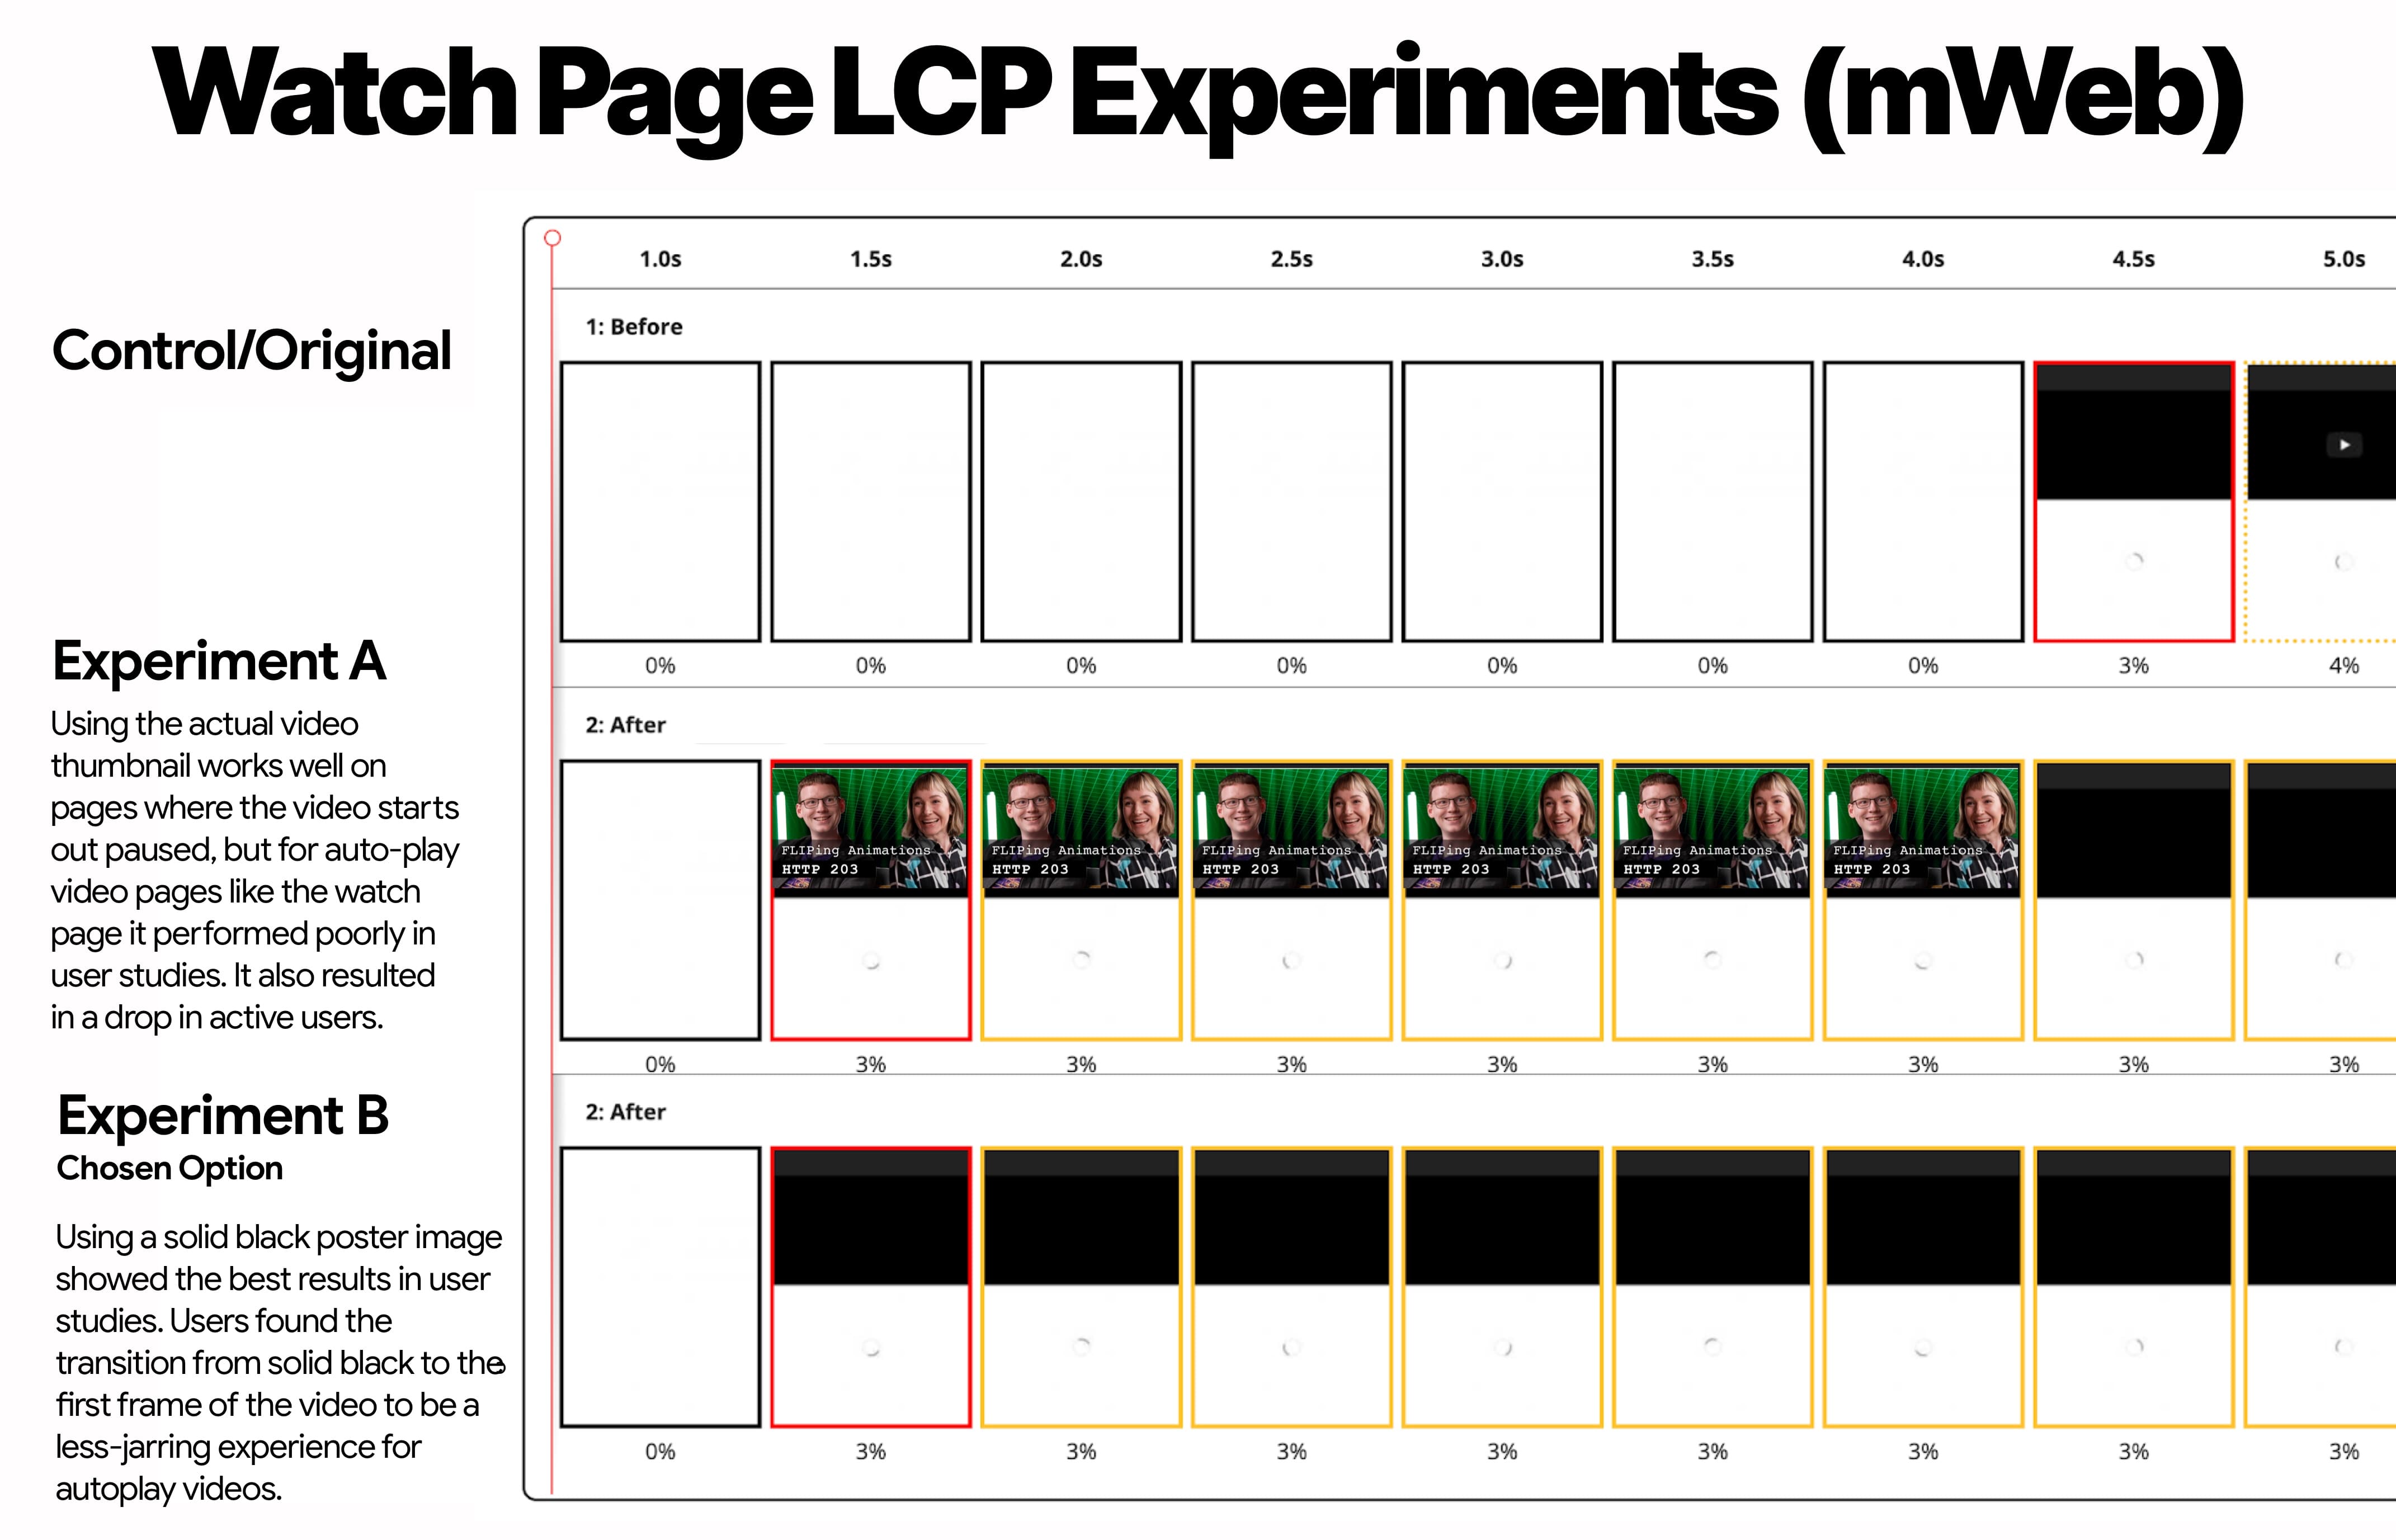 تماشای صفحه آزمایش LCP برای وب تلفن همراه که کنترل، آزمایش A (تصویر کوچک تصویر) و آزمایش B (تصویر کوچک سیاه) را نشان می‌دهد.